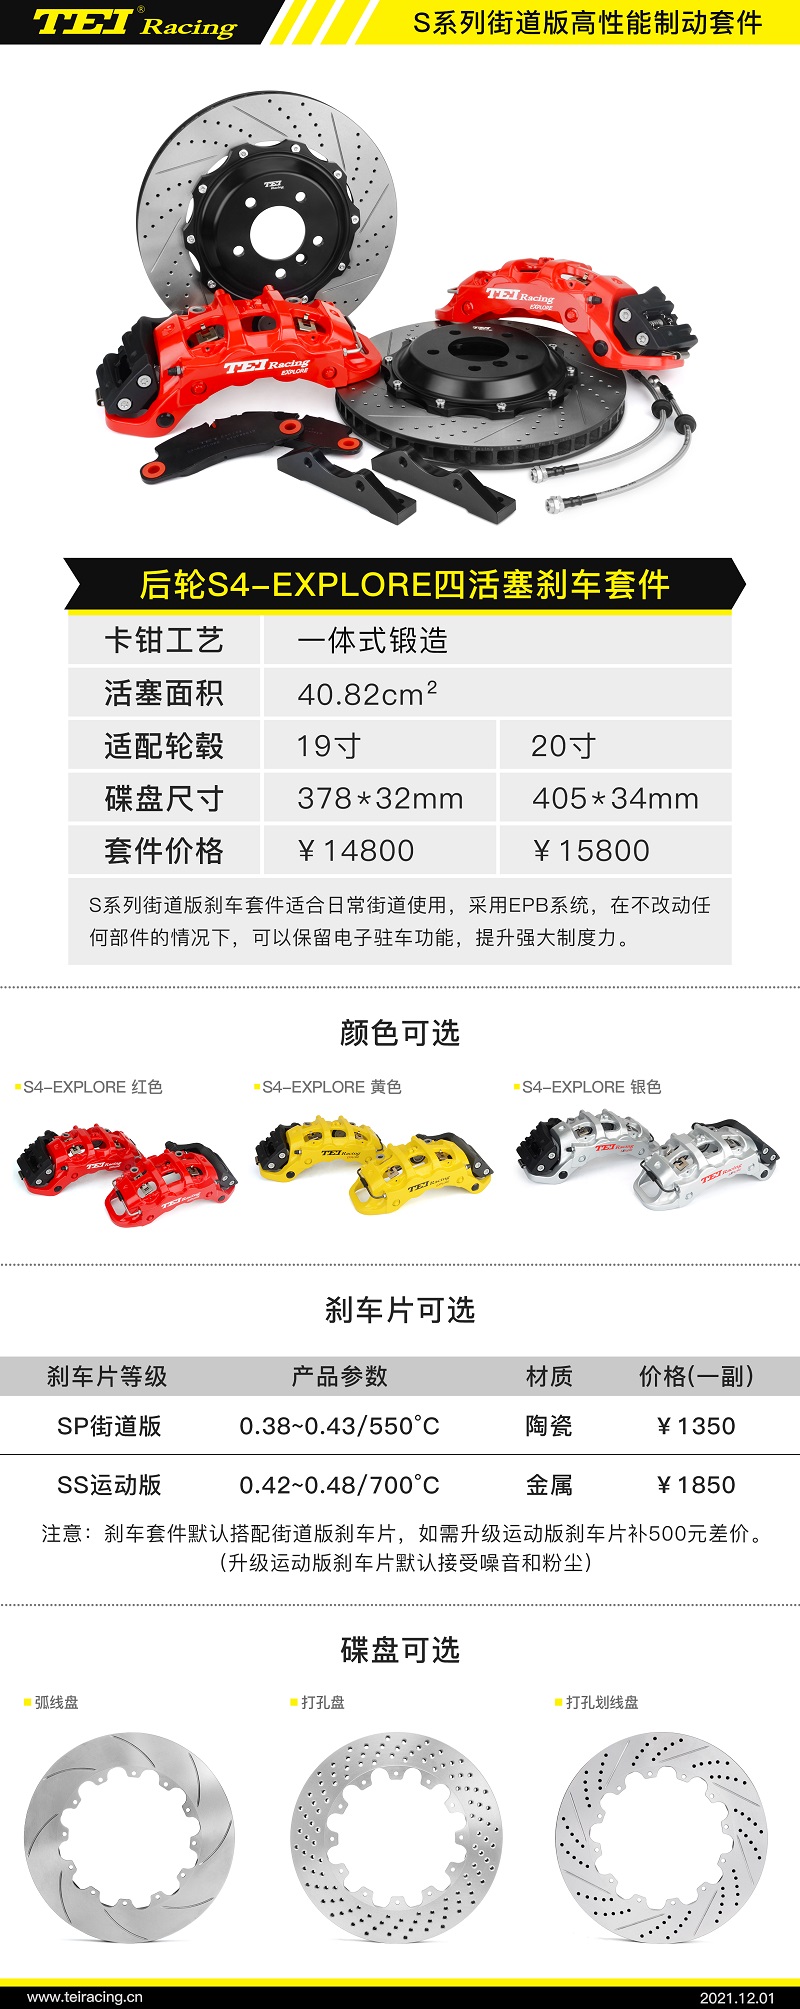 【效果图鉴赏】小鹏P7升级TEI Racing S系列高性能一体刹车卡钳套装